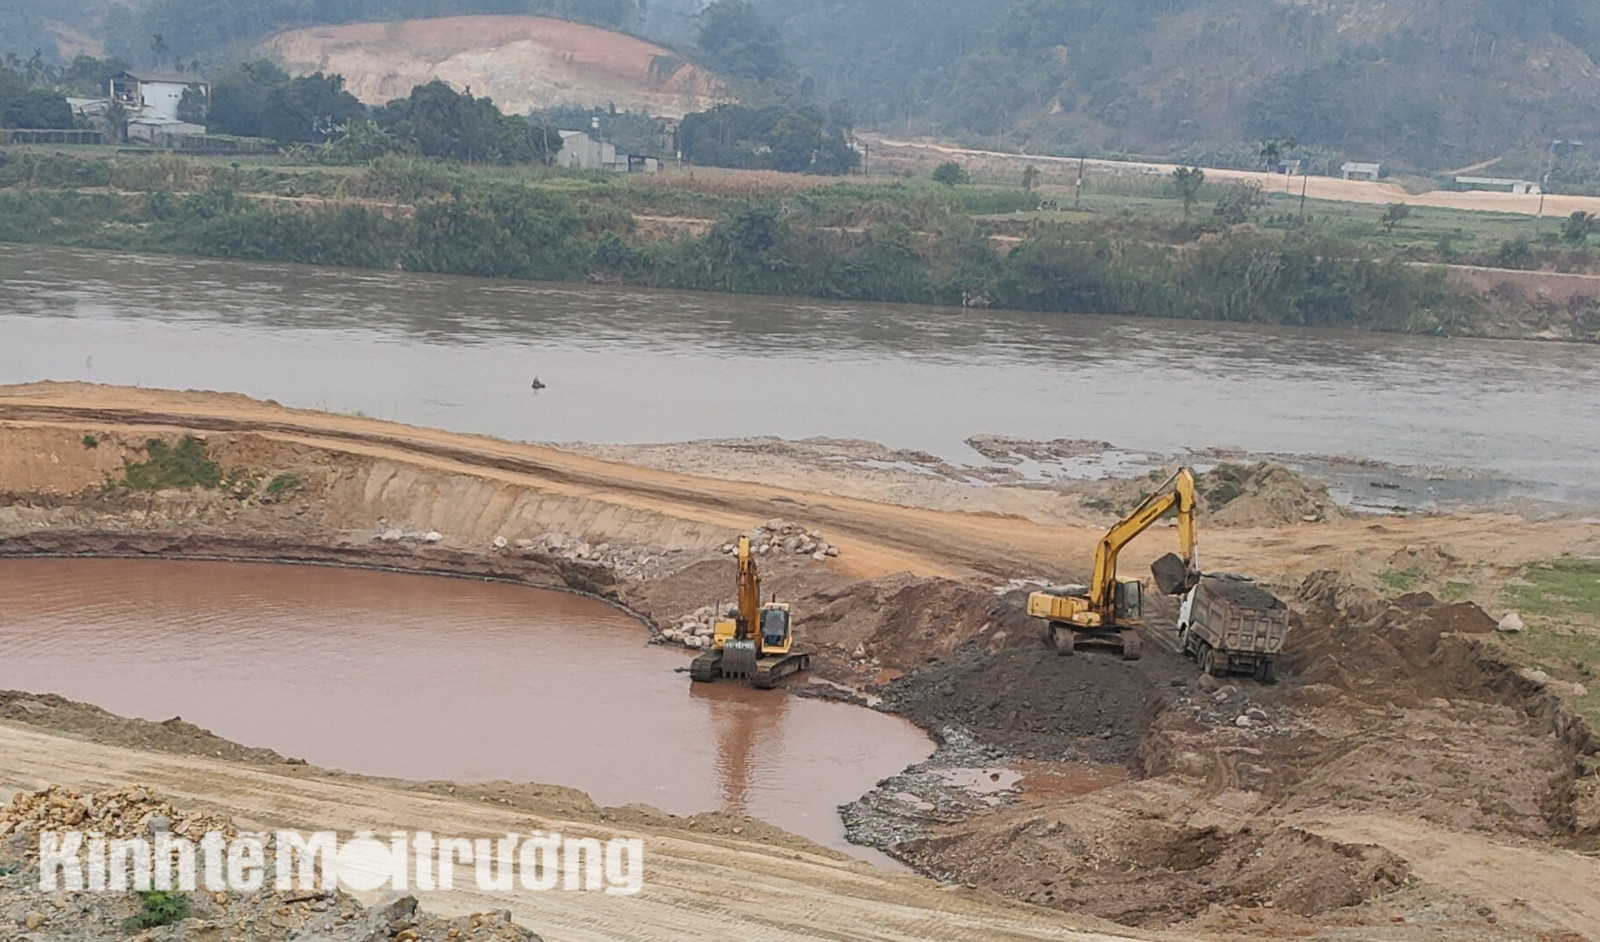 Lợi dụng làm dự án kè tả Sông Hồng, doanh nghiệp ngang nhiên khai thác tài nguyên gây ô nhiễm môi trường. Chiếc máy xúc lấy cát từ sông lên thùng xe để vận chuyển ra ngoài.